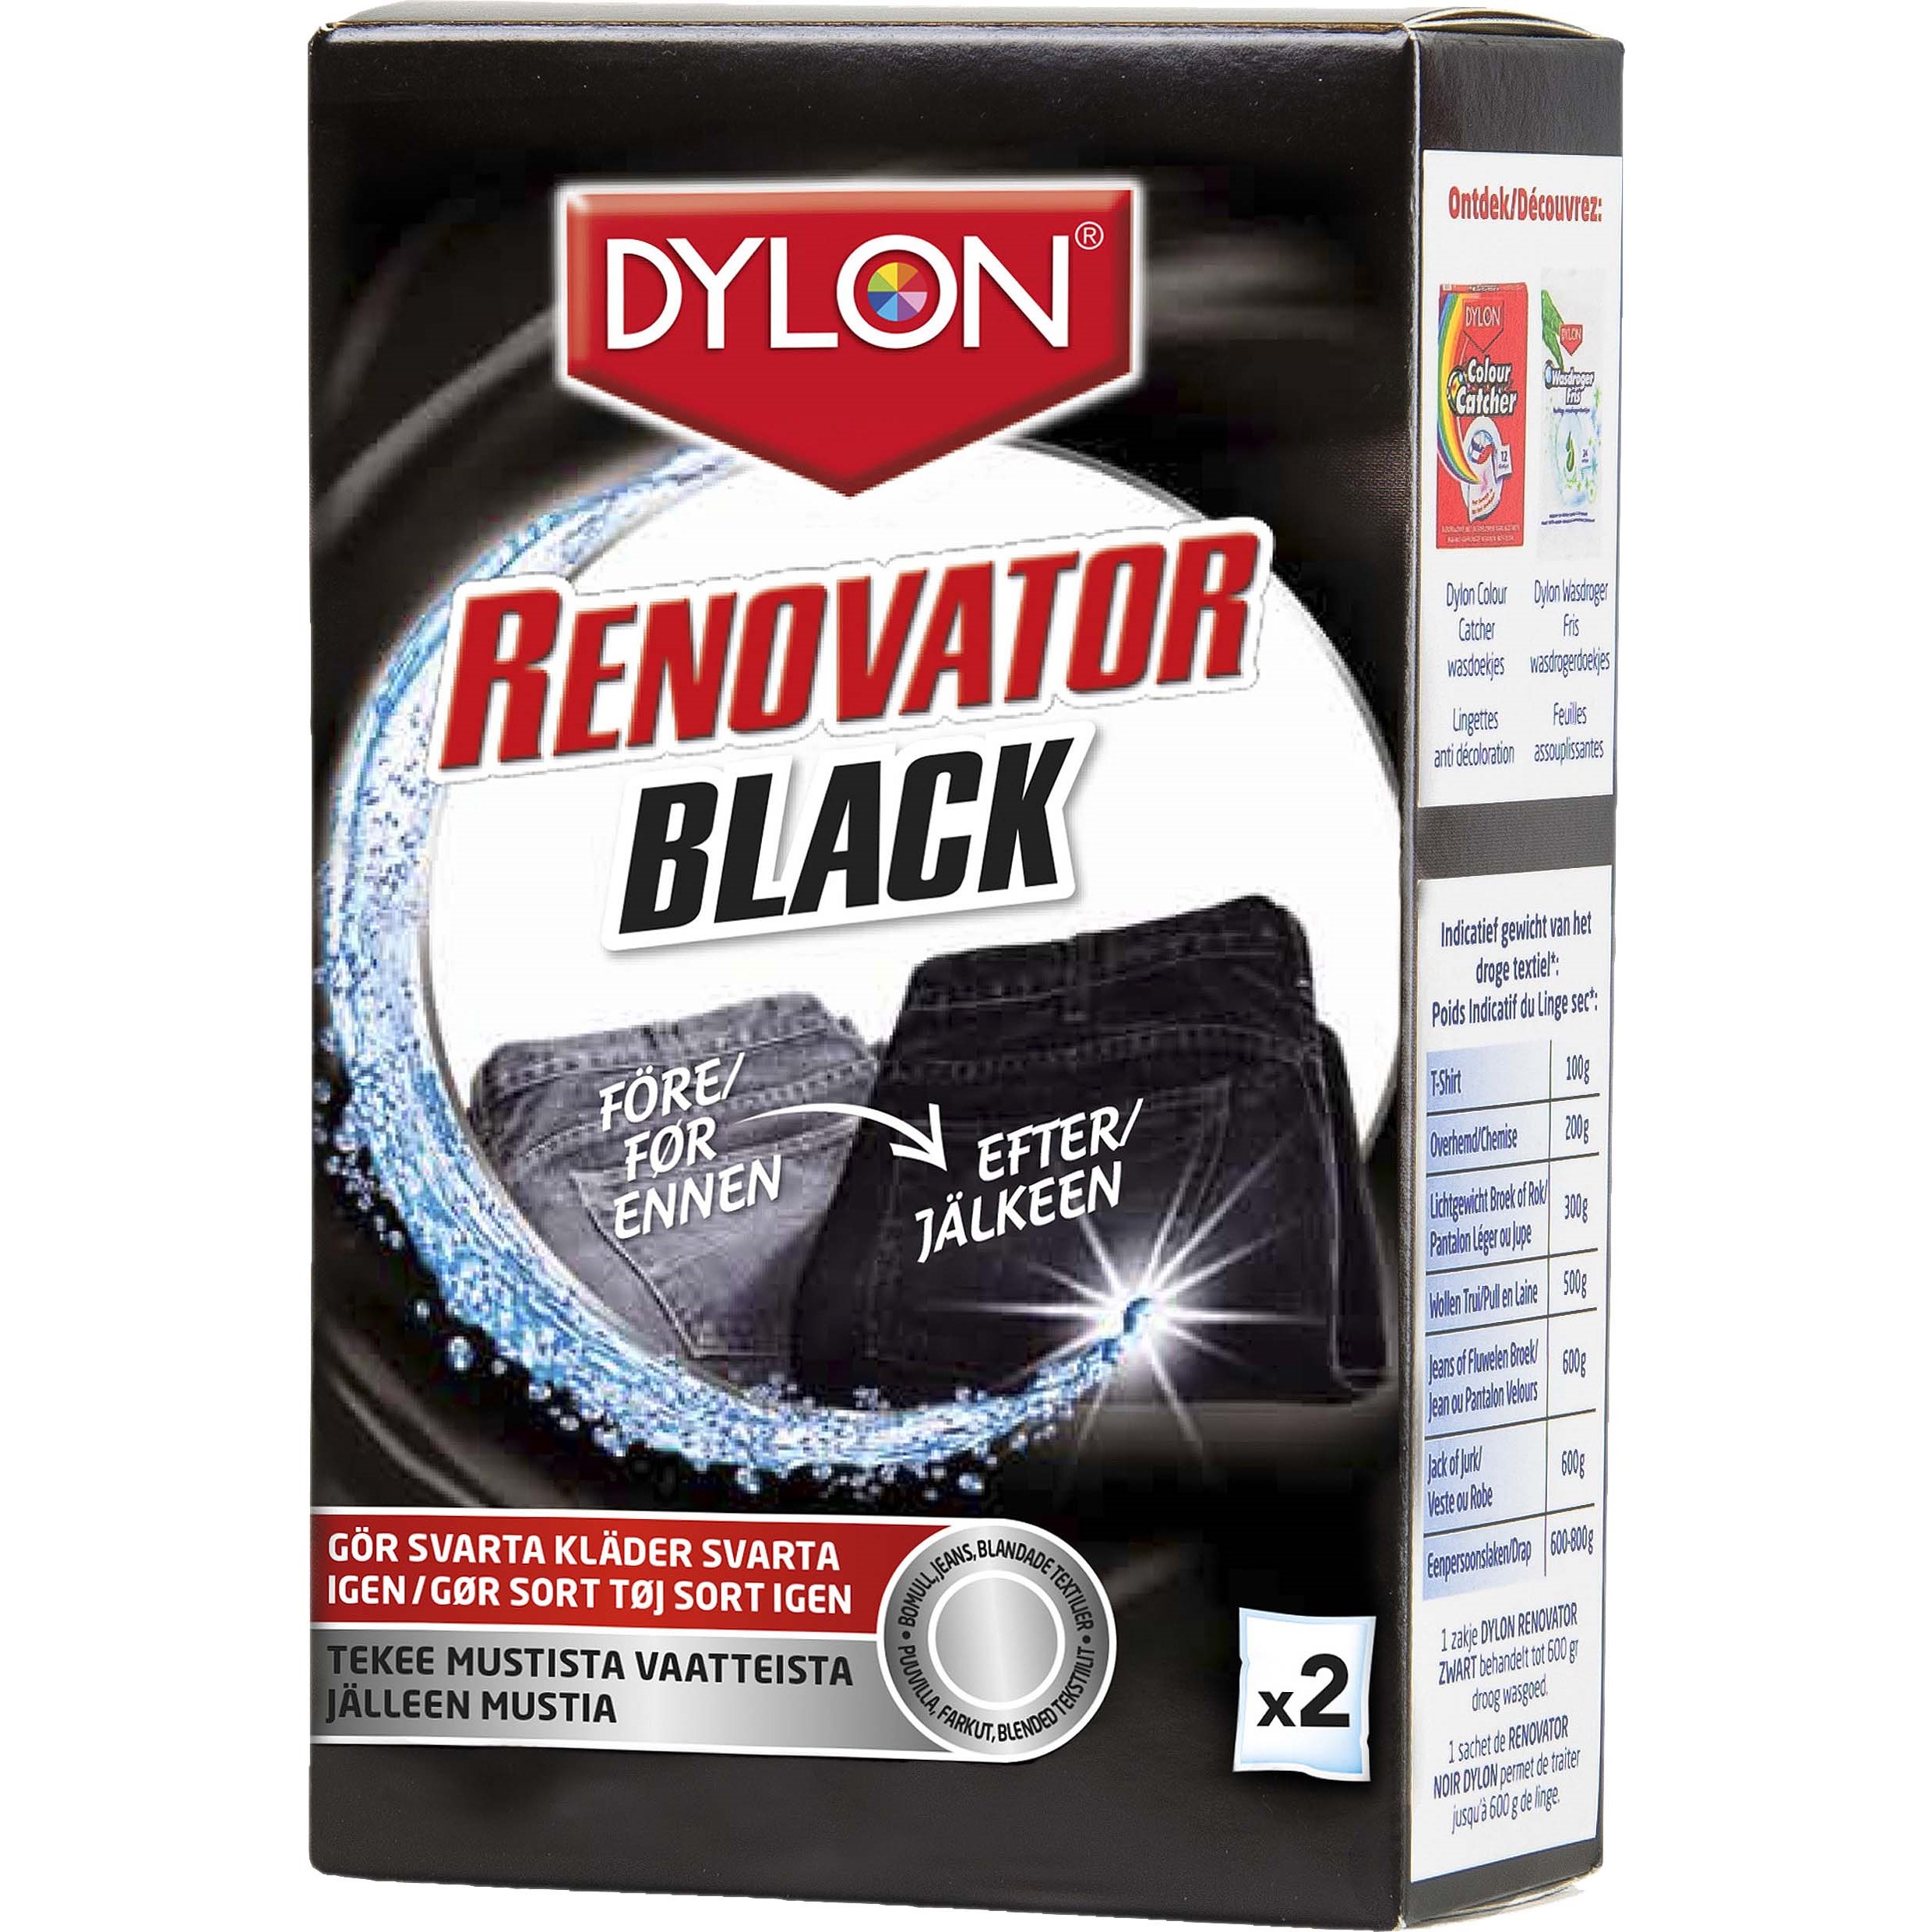 Dylon Black Renovator